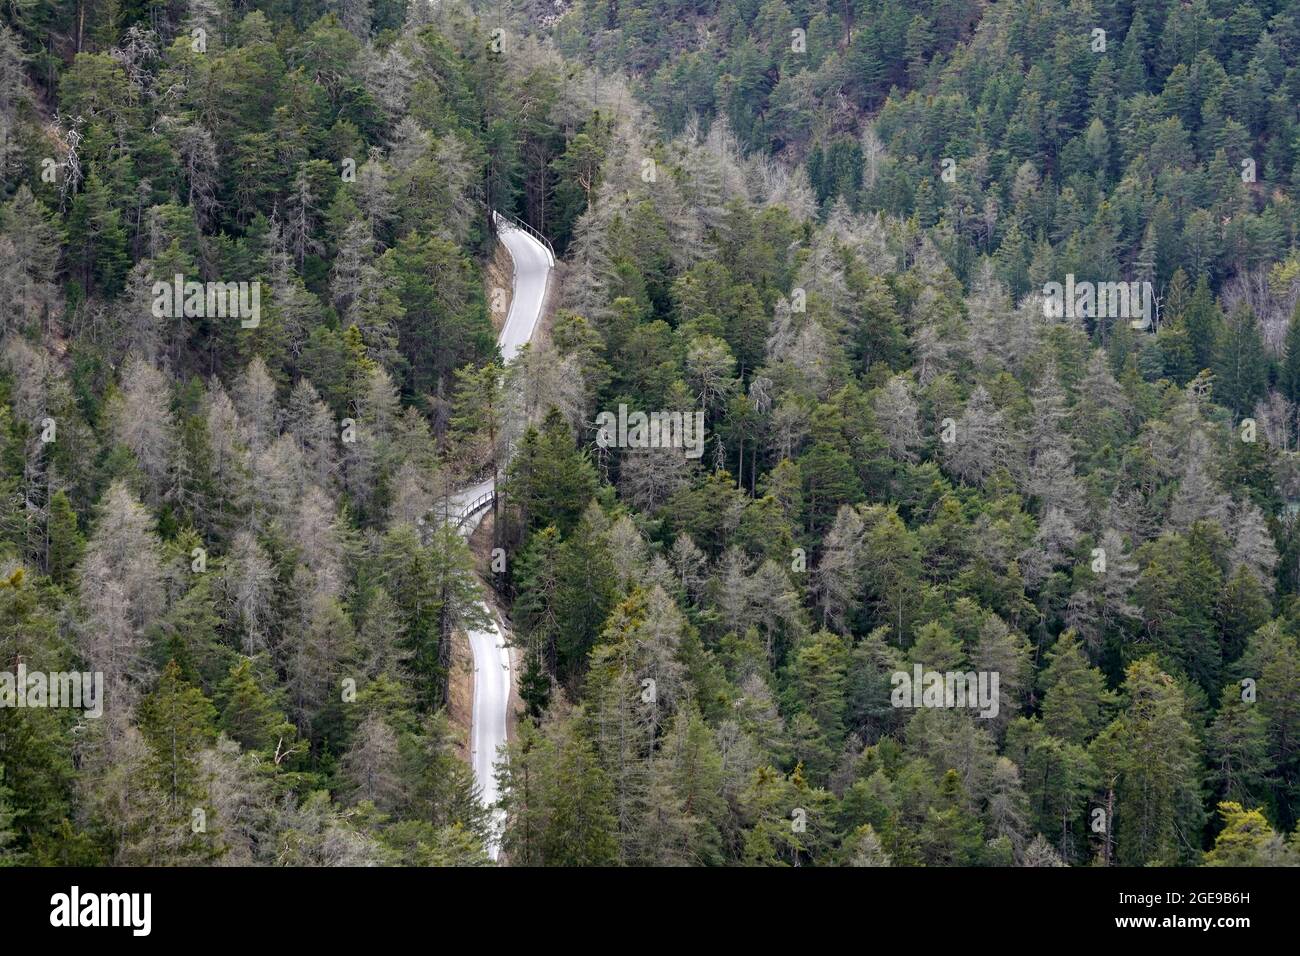 Veduta aerea del bosco di conifere a Safiental in Svizzera con una strada che si snoda tra gli alberi. È disponibile anche uno spazio per la copia. Foto Stock